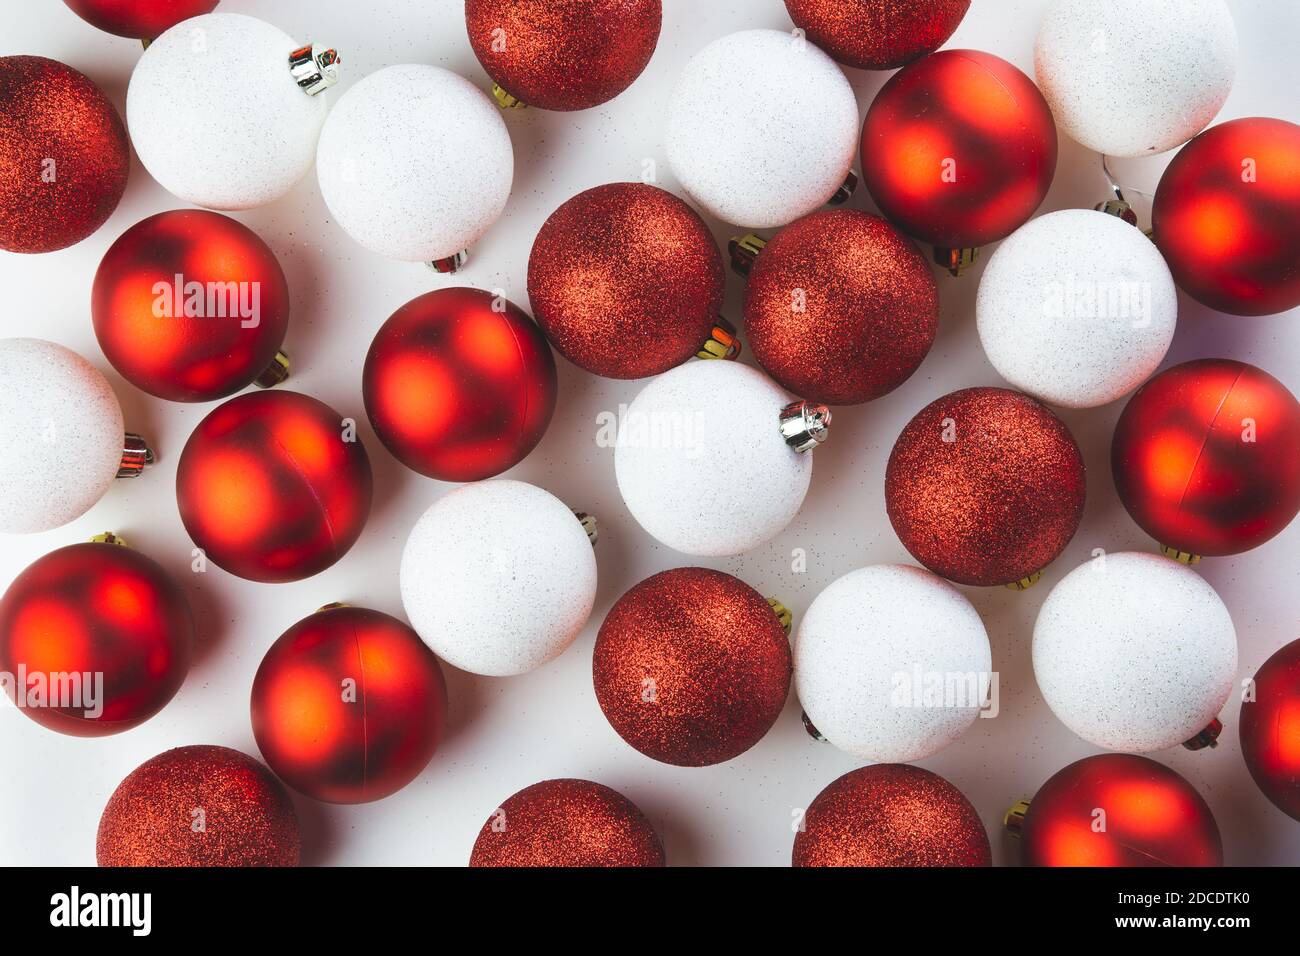 Des boules rouges et blanches de décorations d'arbre de Noël sont dispersées sur une table blanche. Noël, fond du nouvel an, carte postale. Banque D'Images